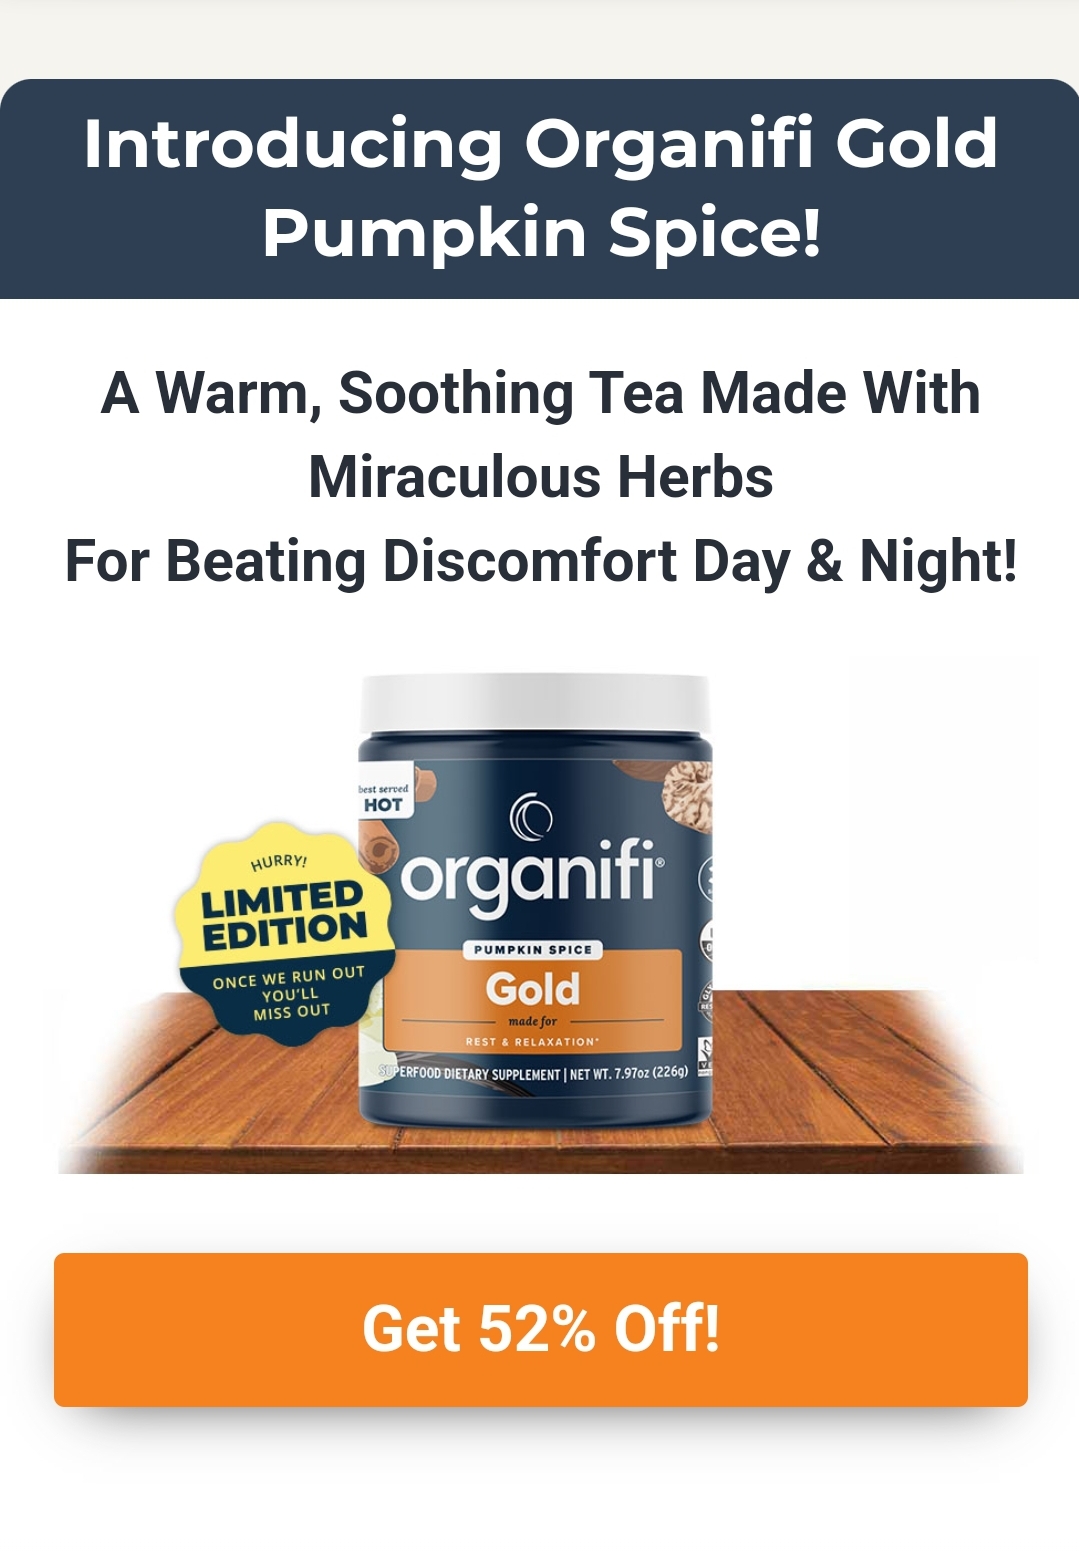 Organifi Gold Pumpkin Spice Save (52%)